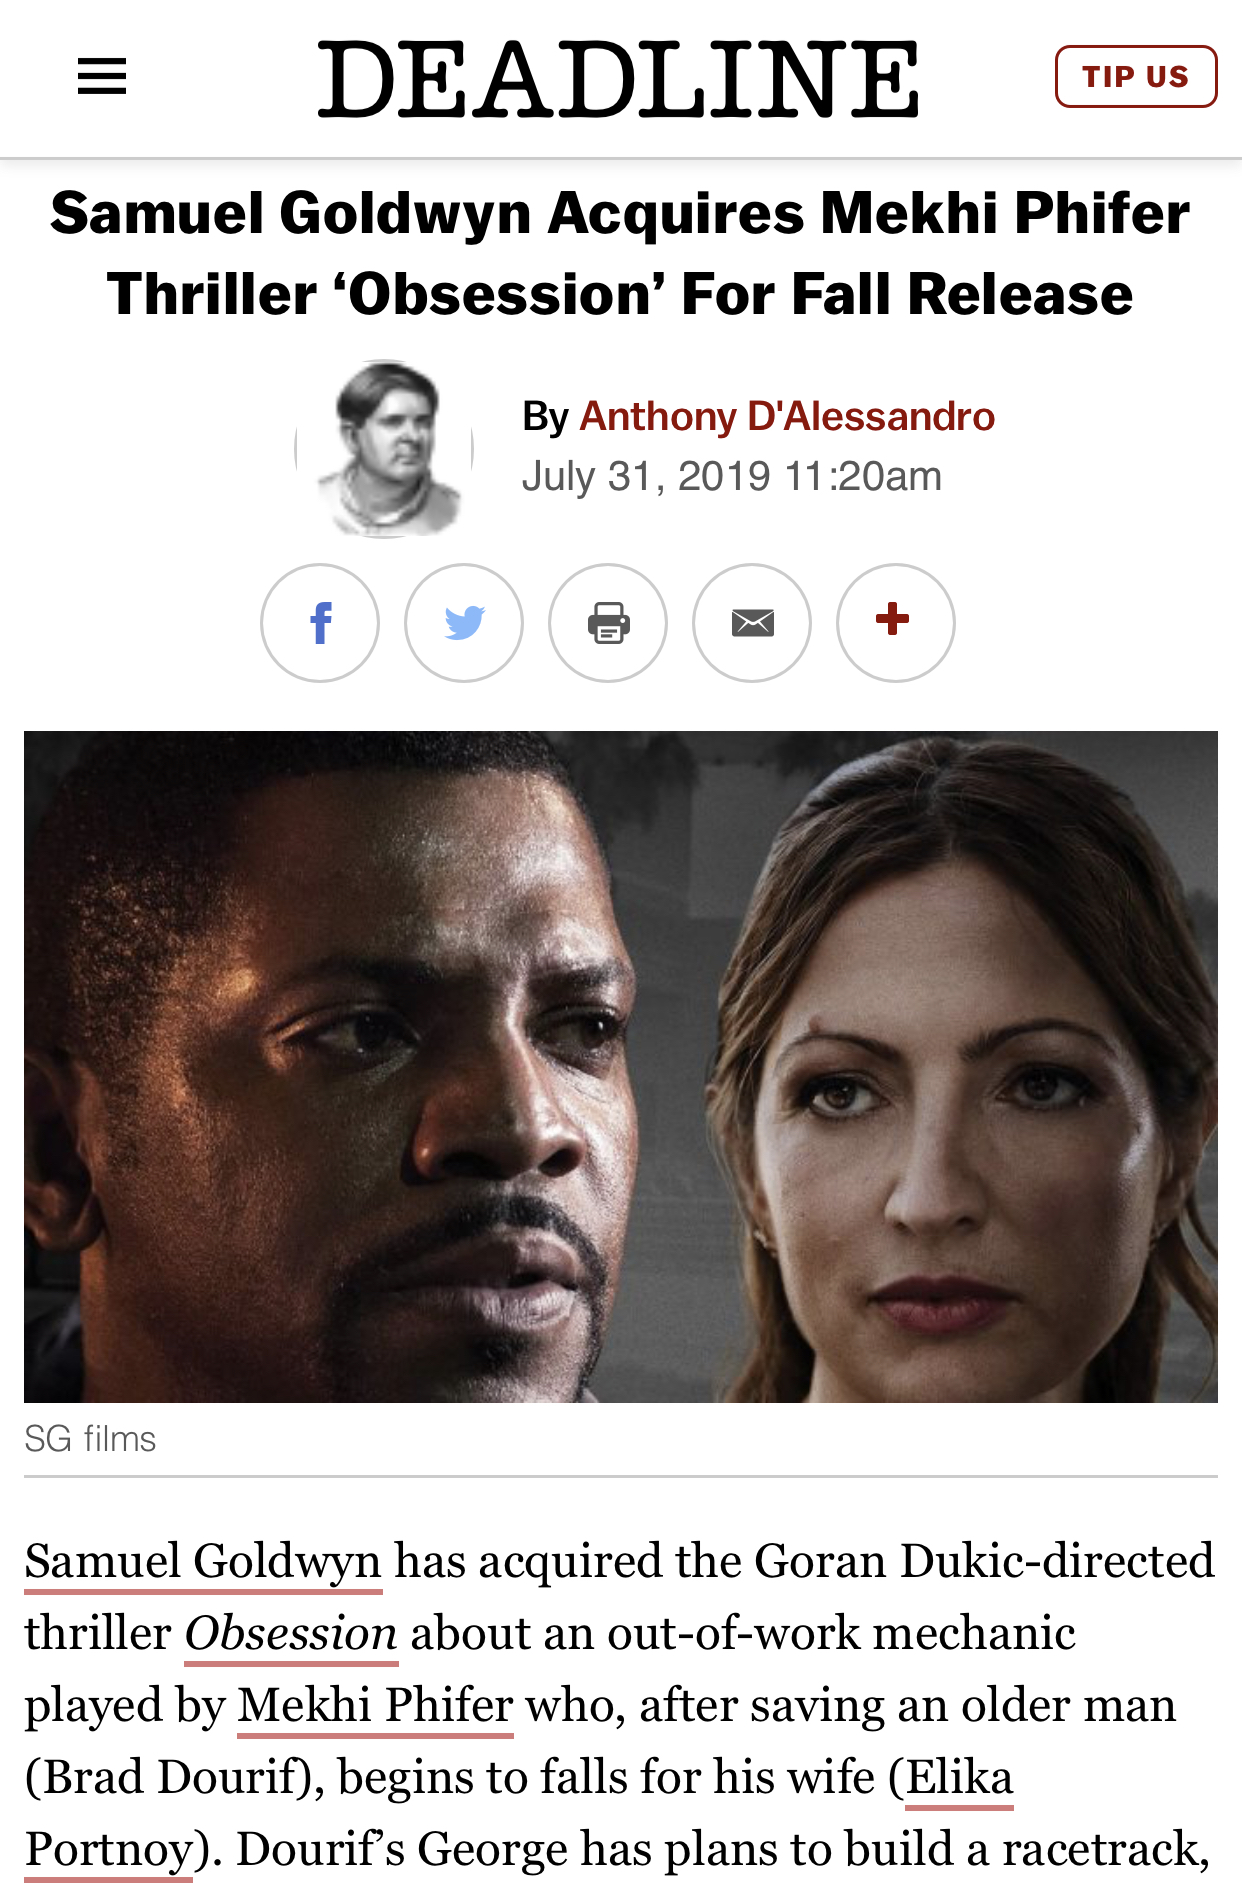 Samuel Goldwyn Acquires Mekhi Phifer Thriller ‘Obsession’ For Fall Release